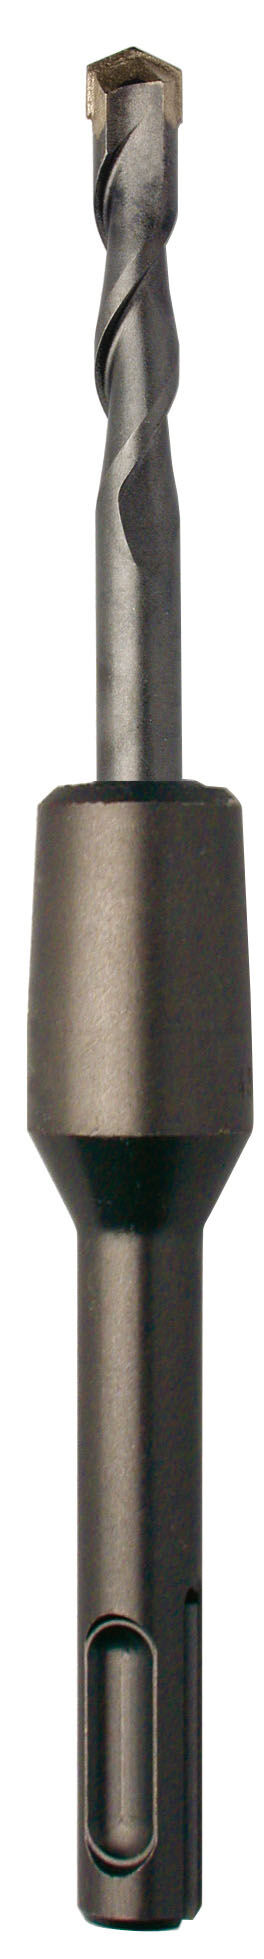 Trépan diamant béton avec attachement M16 - 431 Diager - Spirale Unique